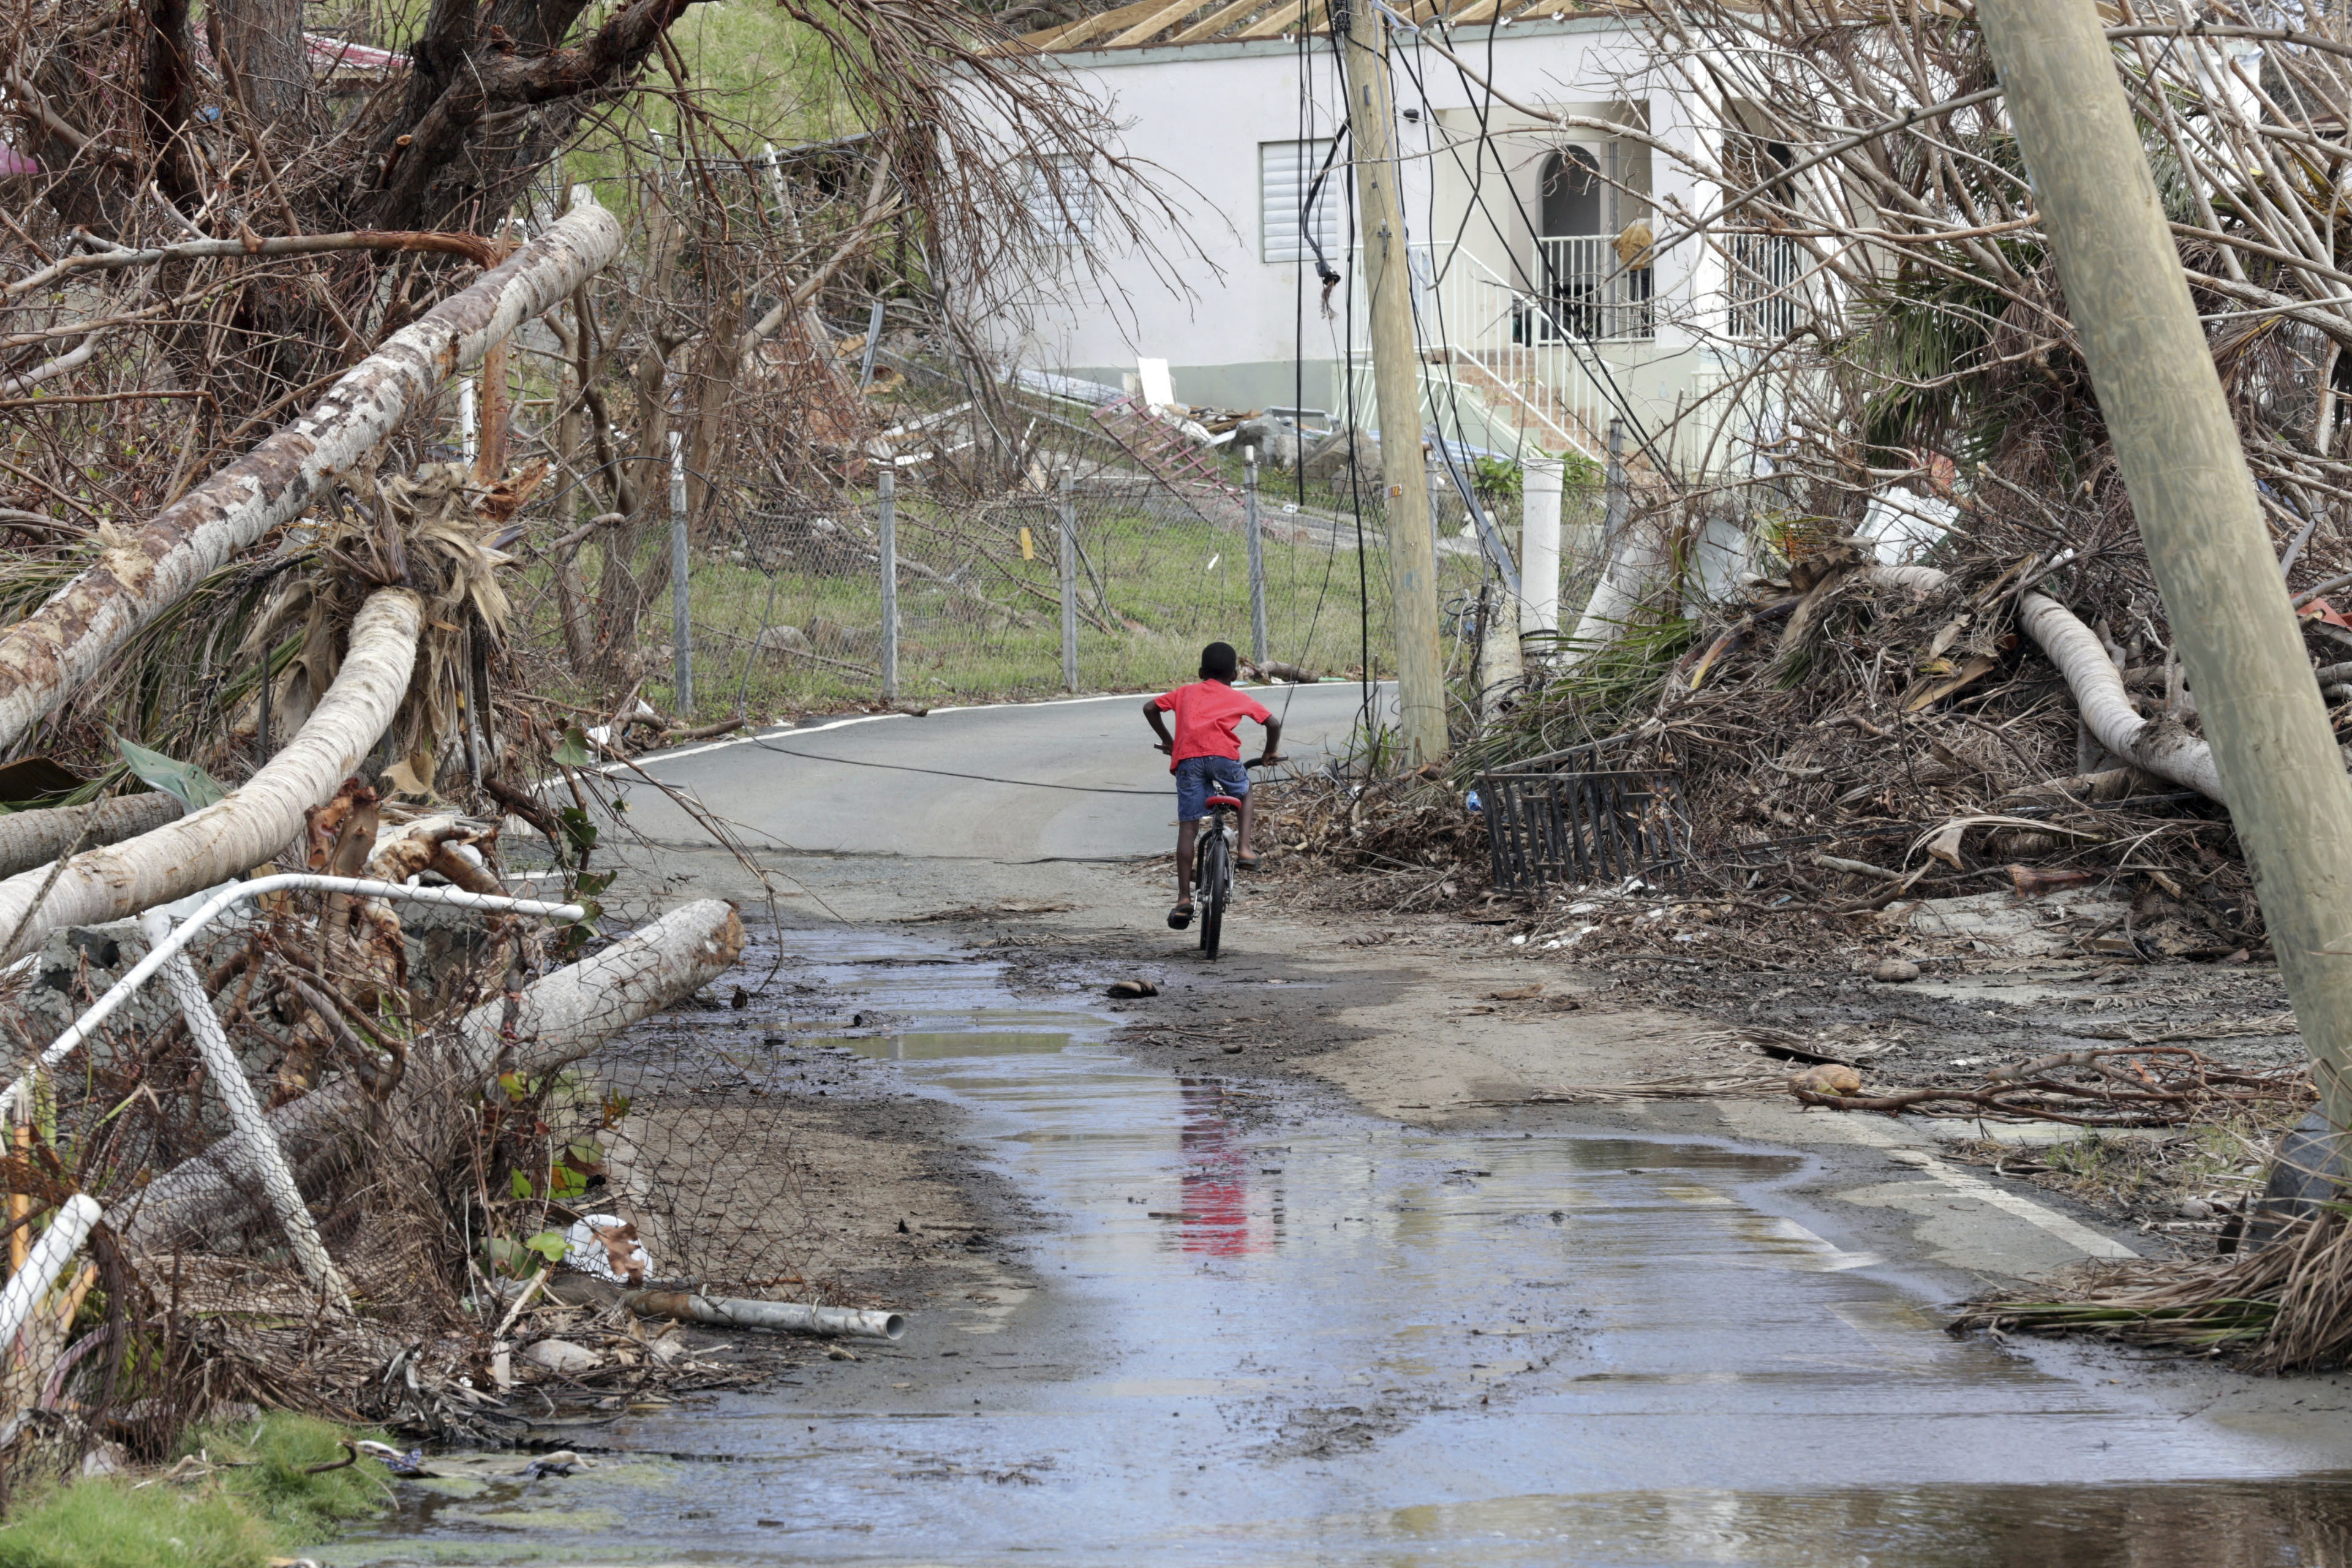 Según Kenneth Mapp, gobernador de Islas Vírgenes, la red de carreteras está intransitable así como miles de casas se encuentran dañadas o destruidas.